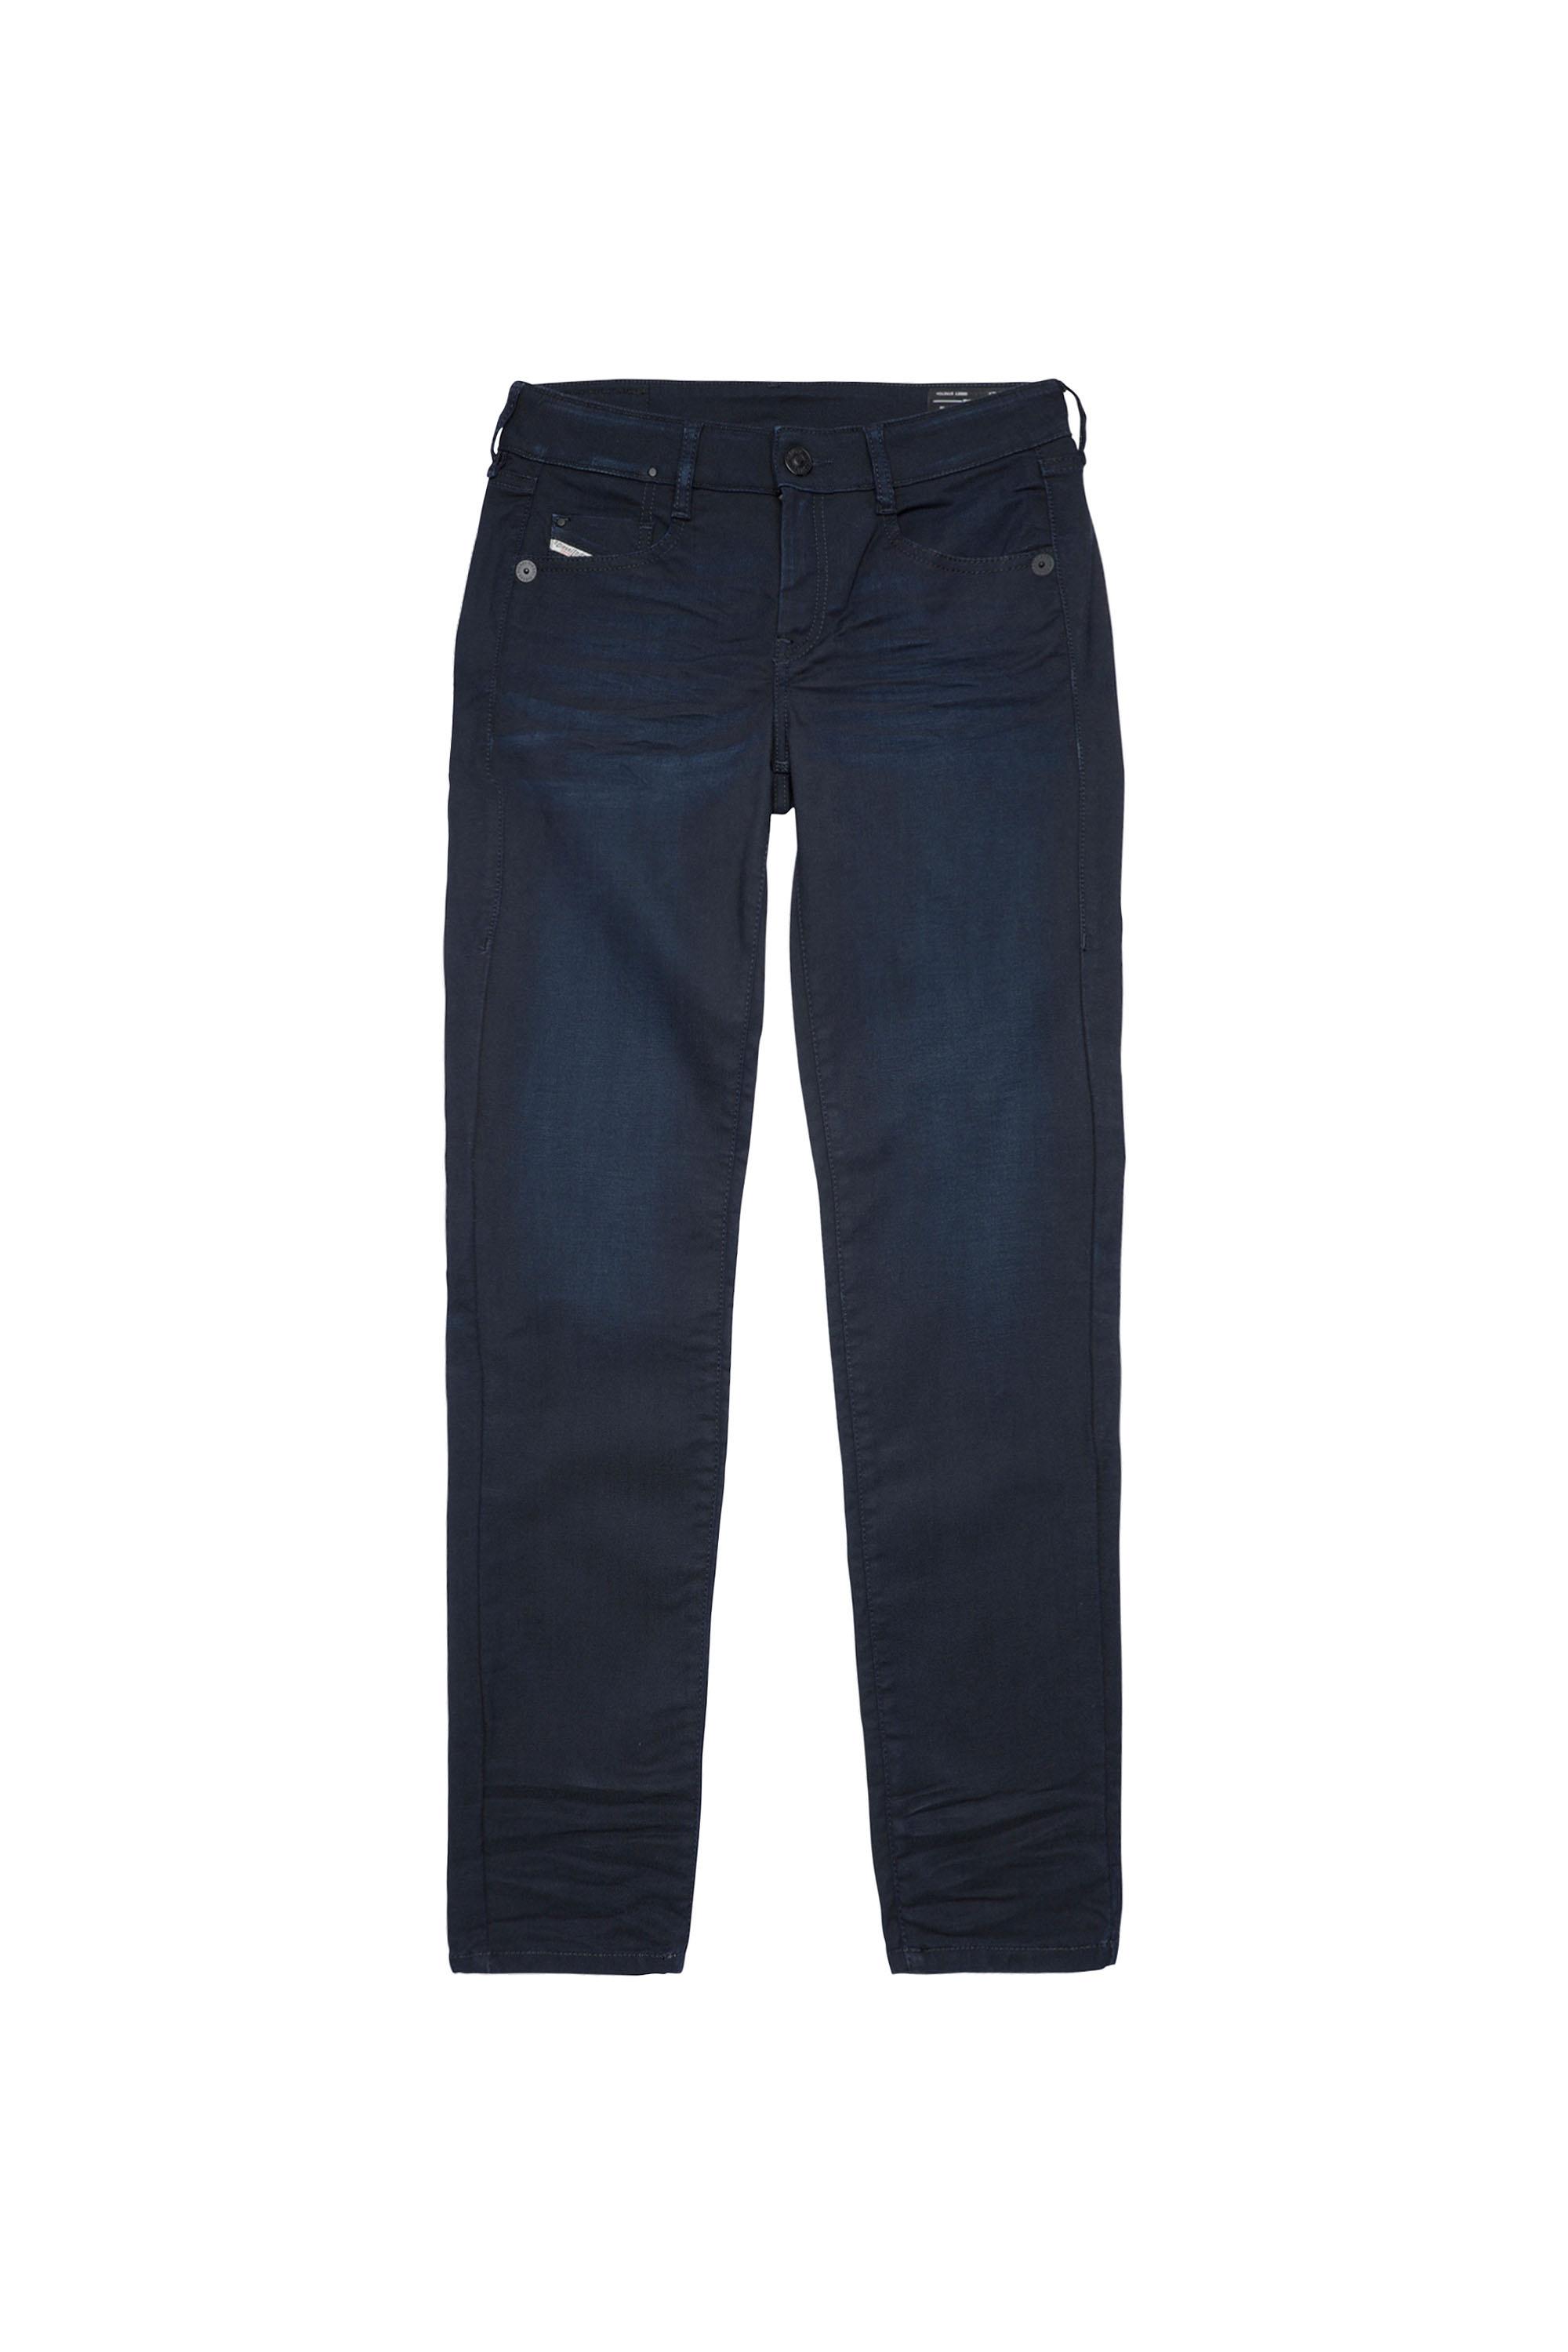 Diesel - D-Ollies Slim JoggJeans® 069XY, Dark Blue - Image 2